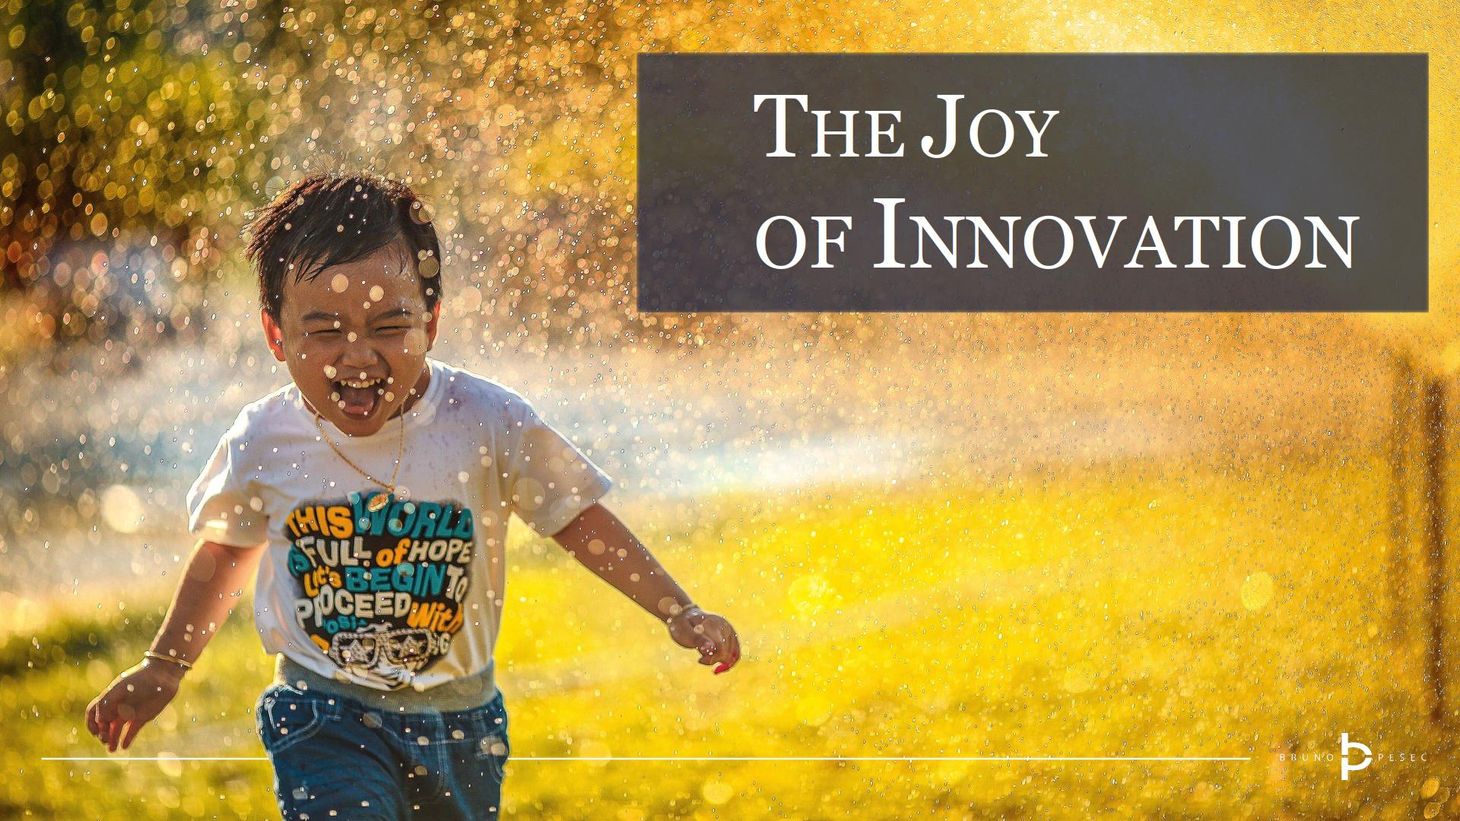 The joy of innovation